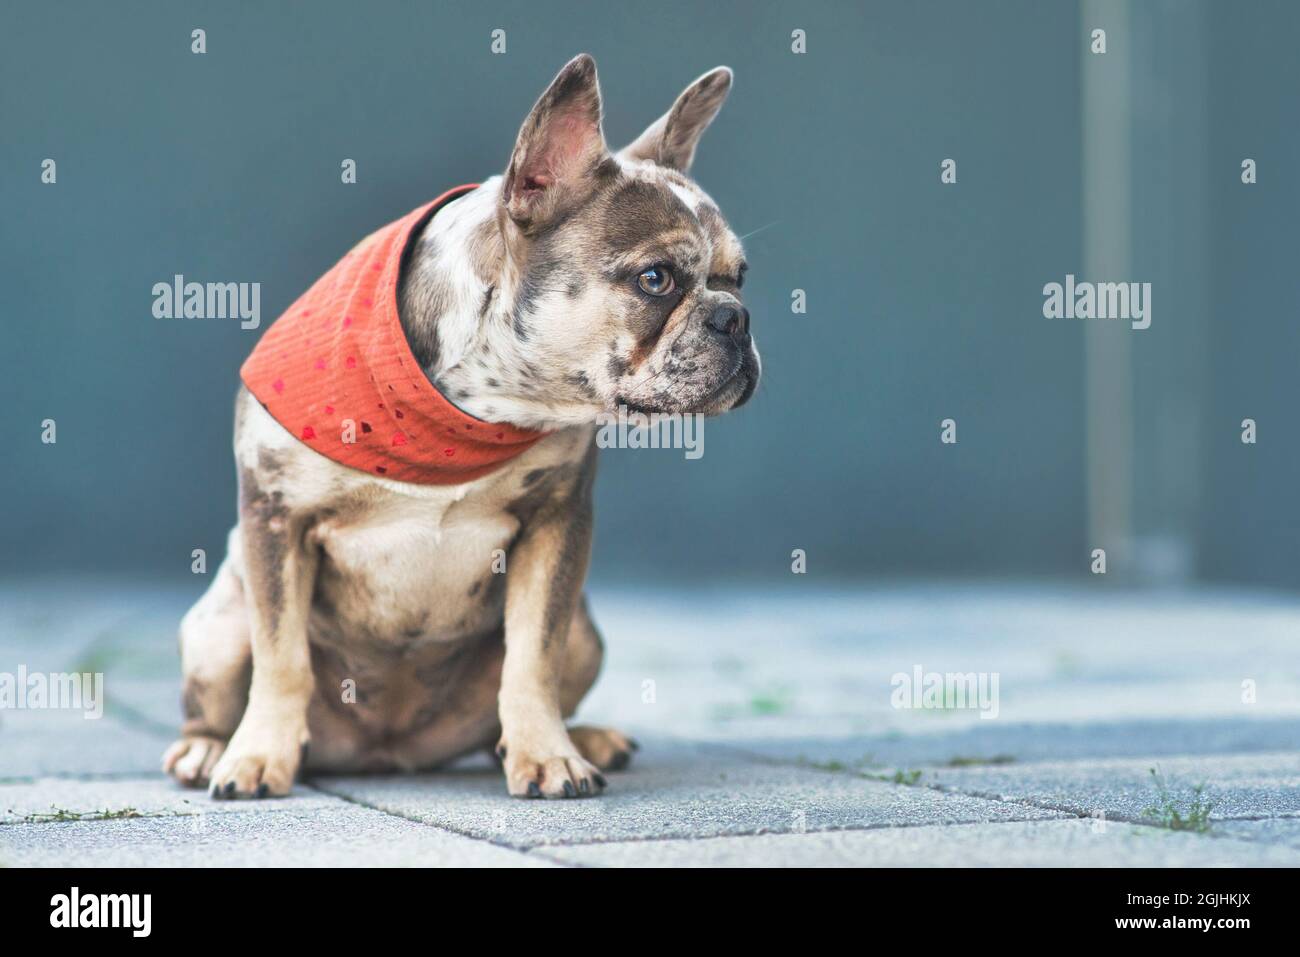 Merle cane Bulldog francese colorato indossando il neckerchietto rosso seduta di fronte al muro grigio con spazio copia Foto Stock